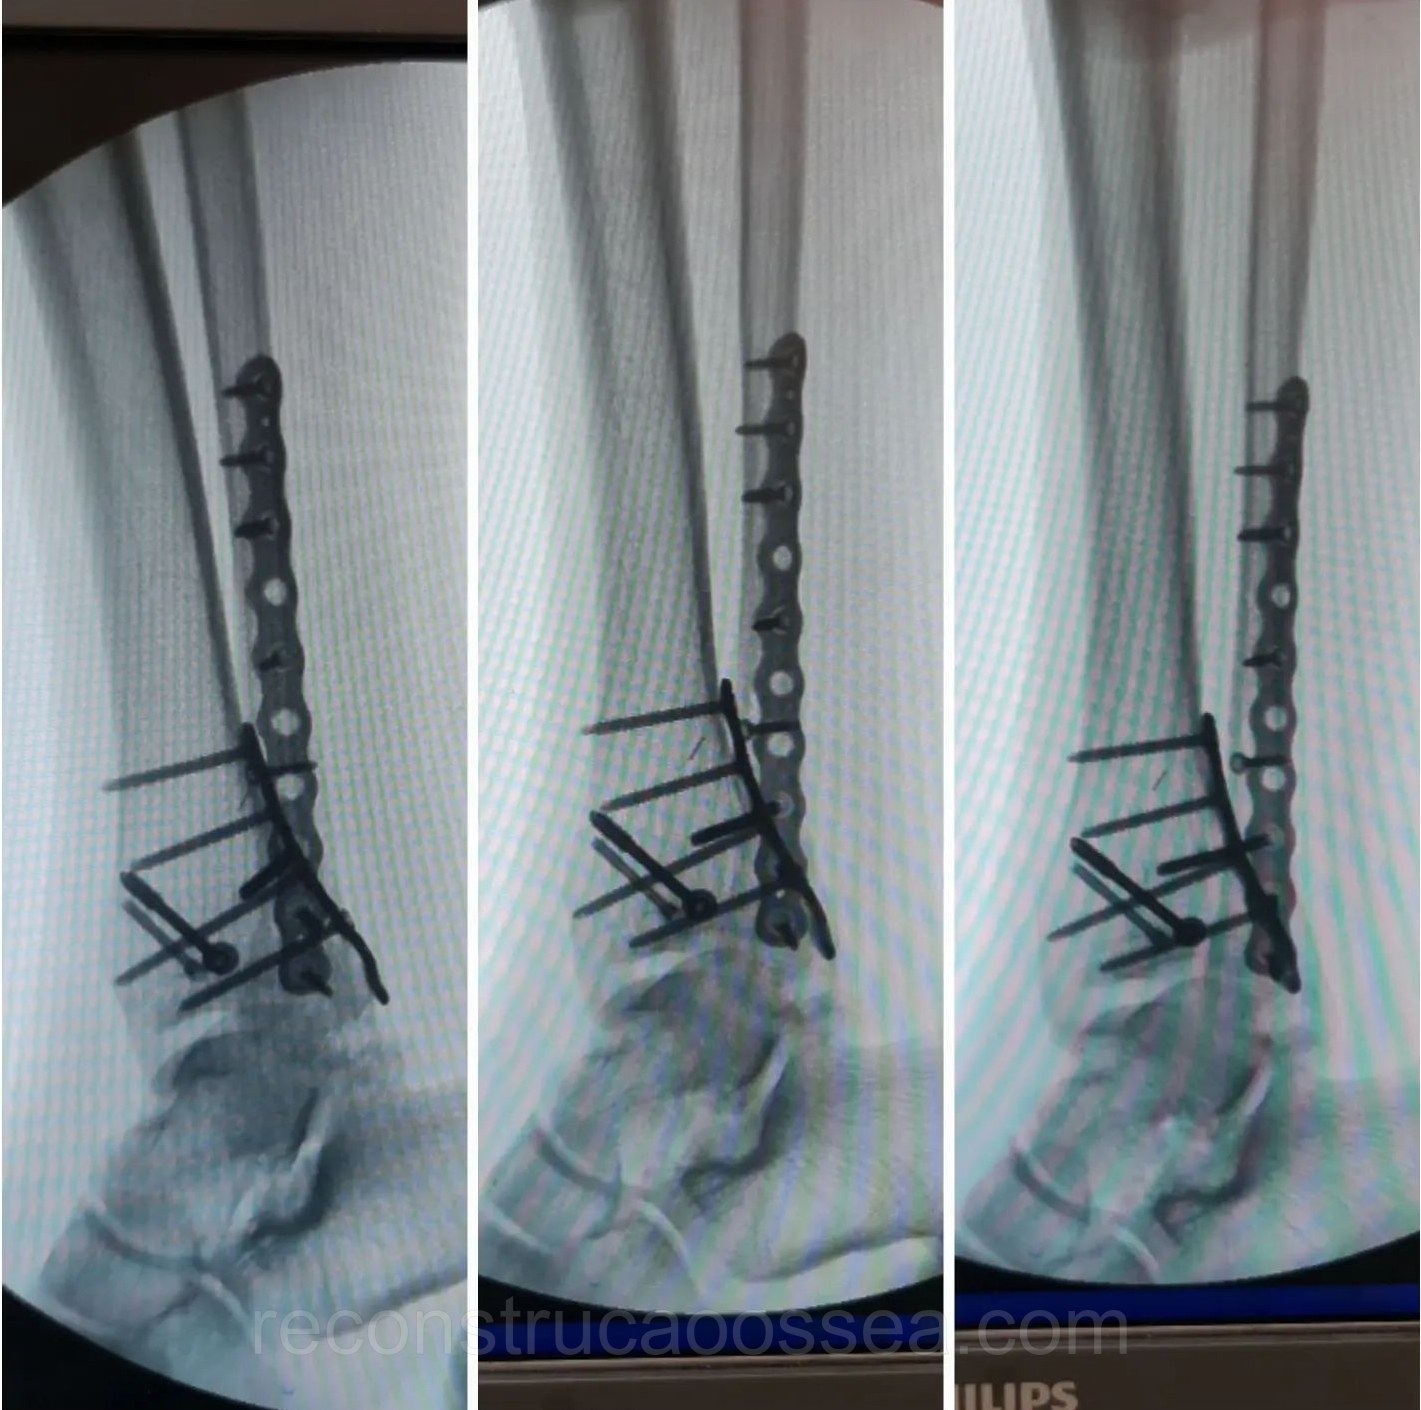 fratura-do-tornozelo-tratamento-cirurgico-25